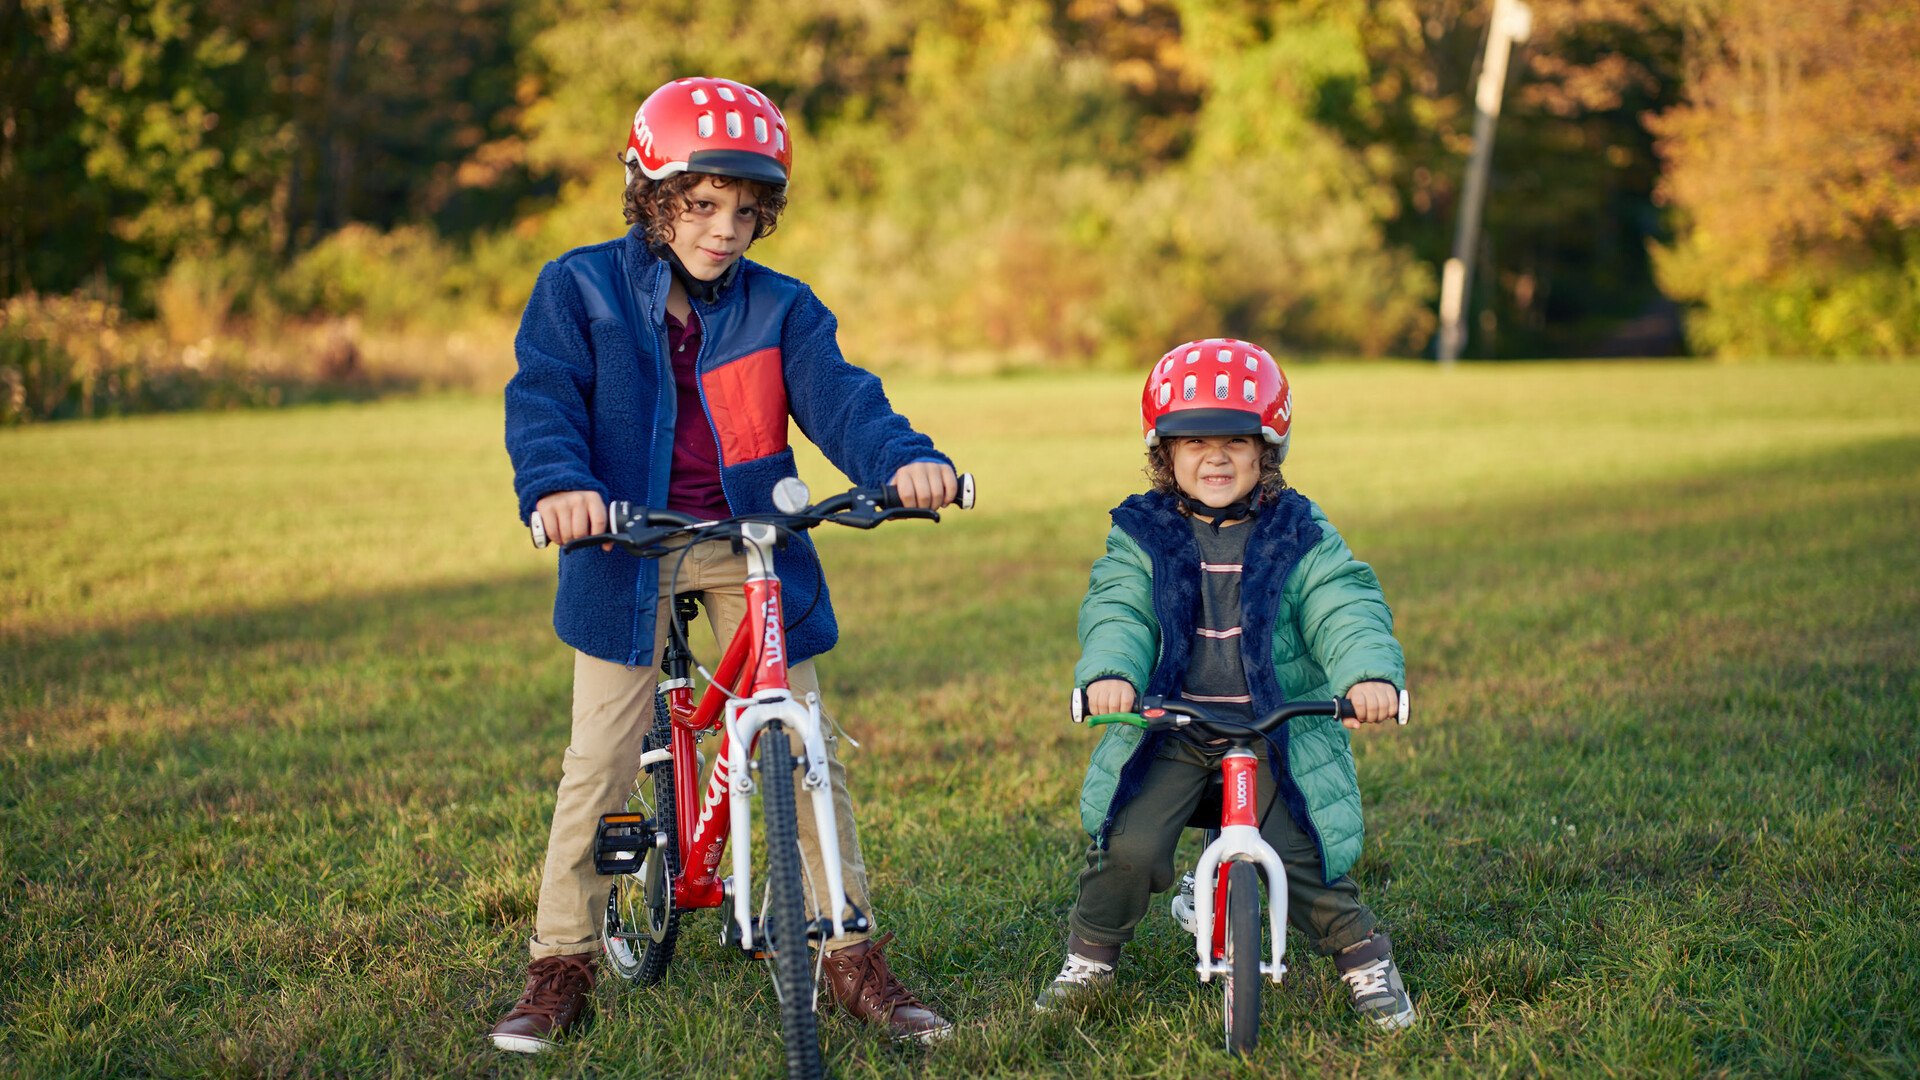 Deux enfants prennent la pose, l’un sur un vélo rouge, l’autre sur une draisienne rouge aussi, avec un casque assorti. 